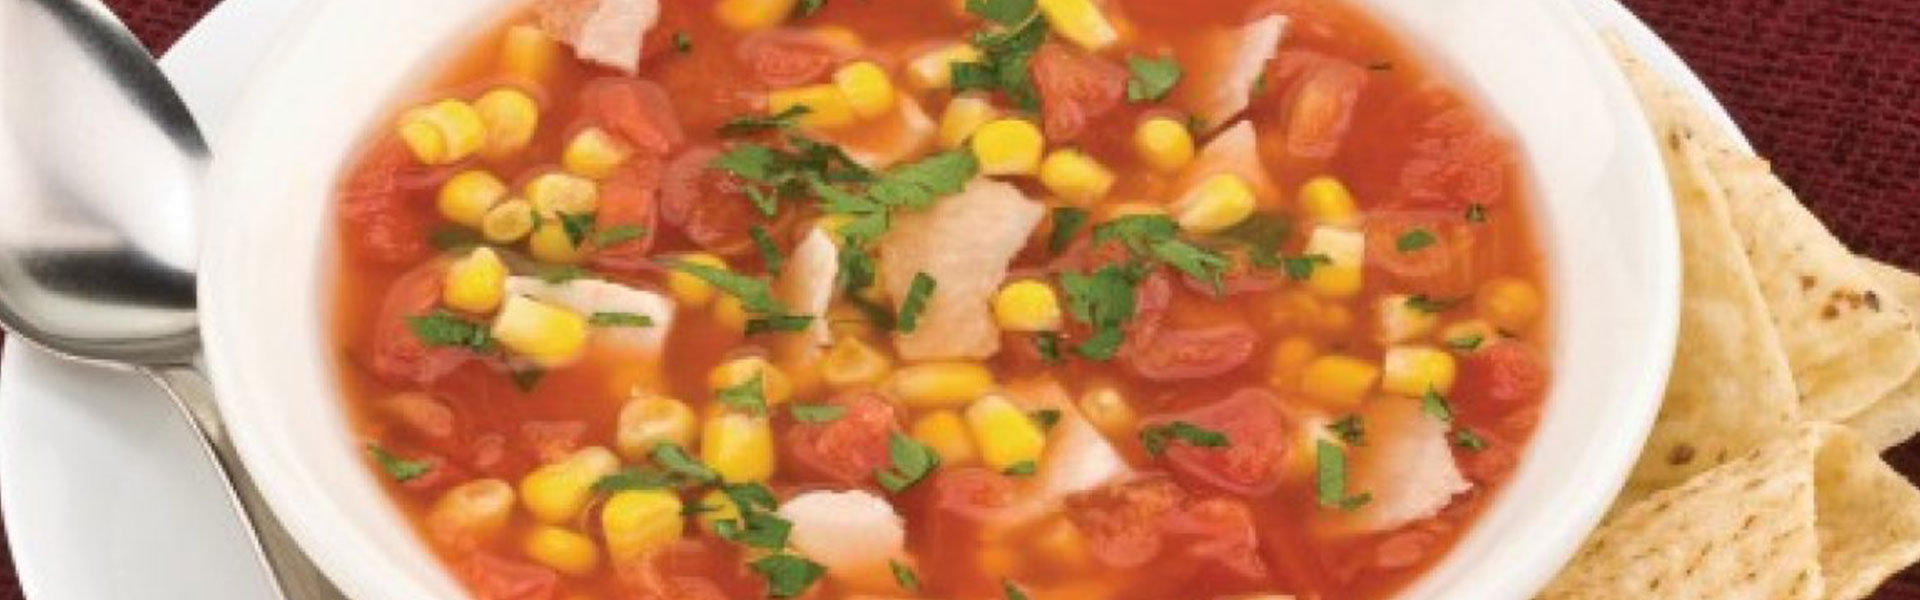 آموزش سوپ مکزیکی با مرغ و ذرت مدرسه آشپزی ایران شف